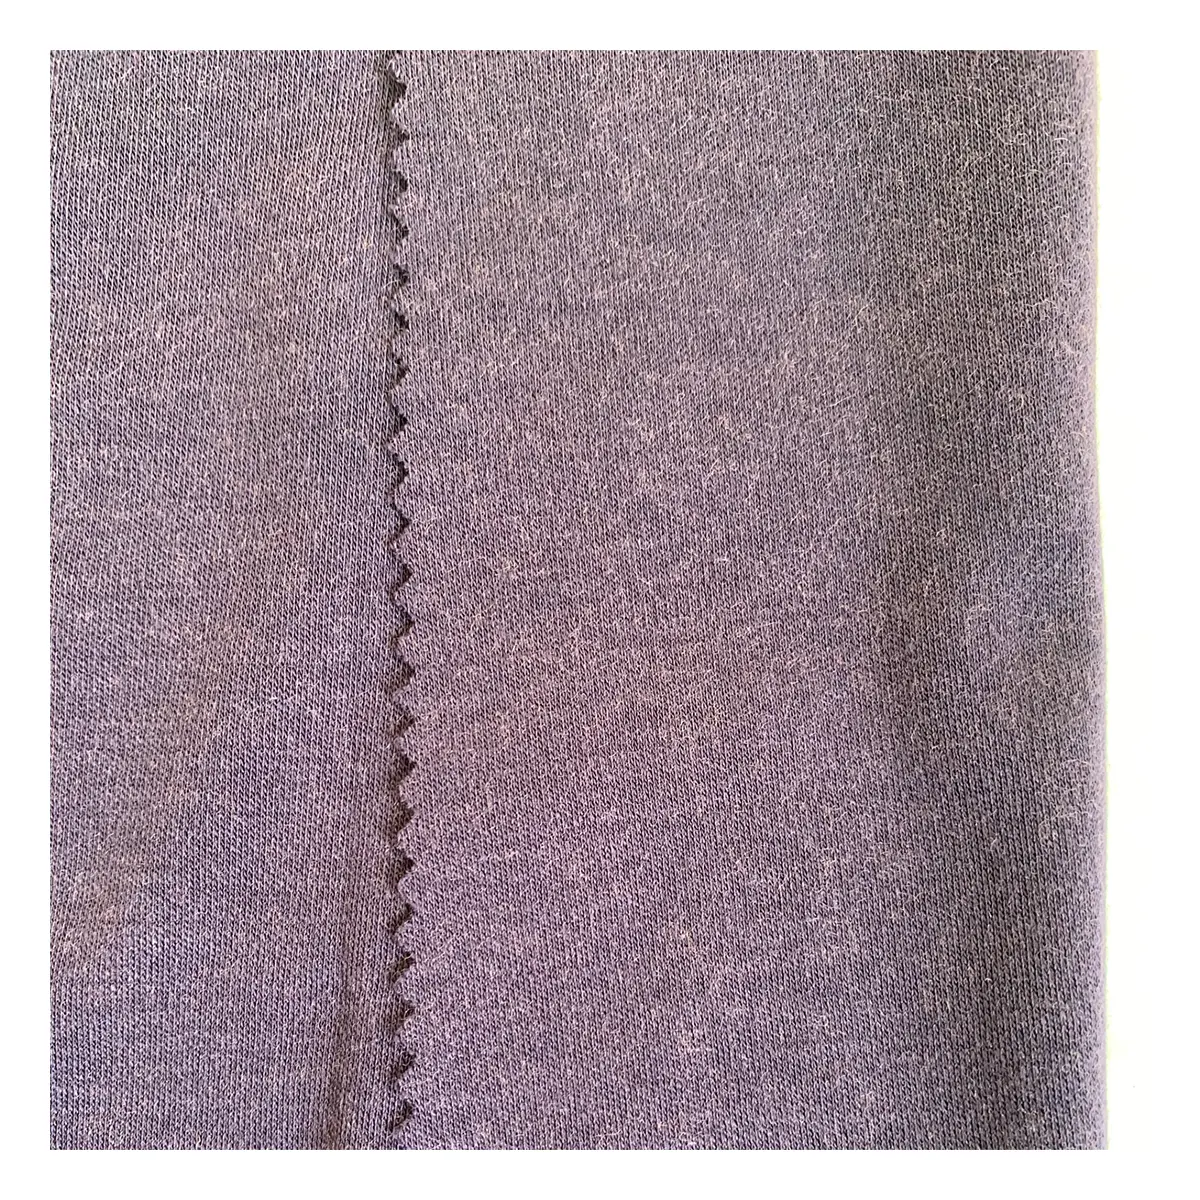 Soft merino wool interlock fabric 100% merino wool scarves fabric